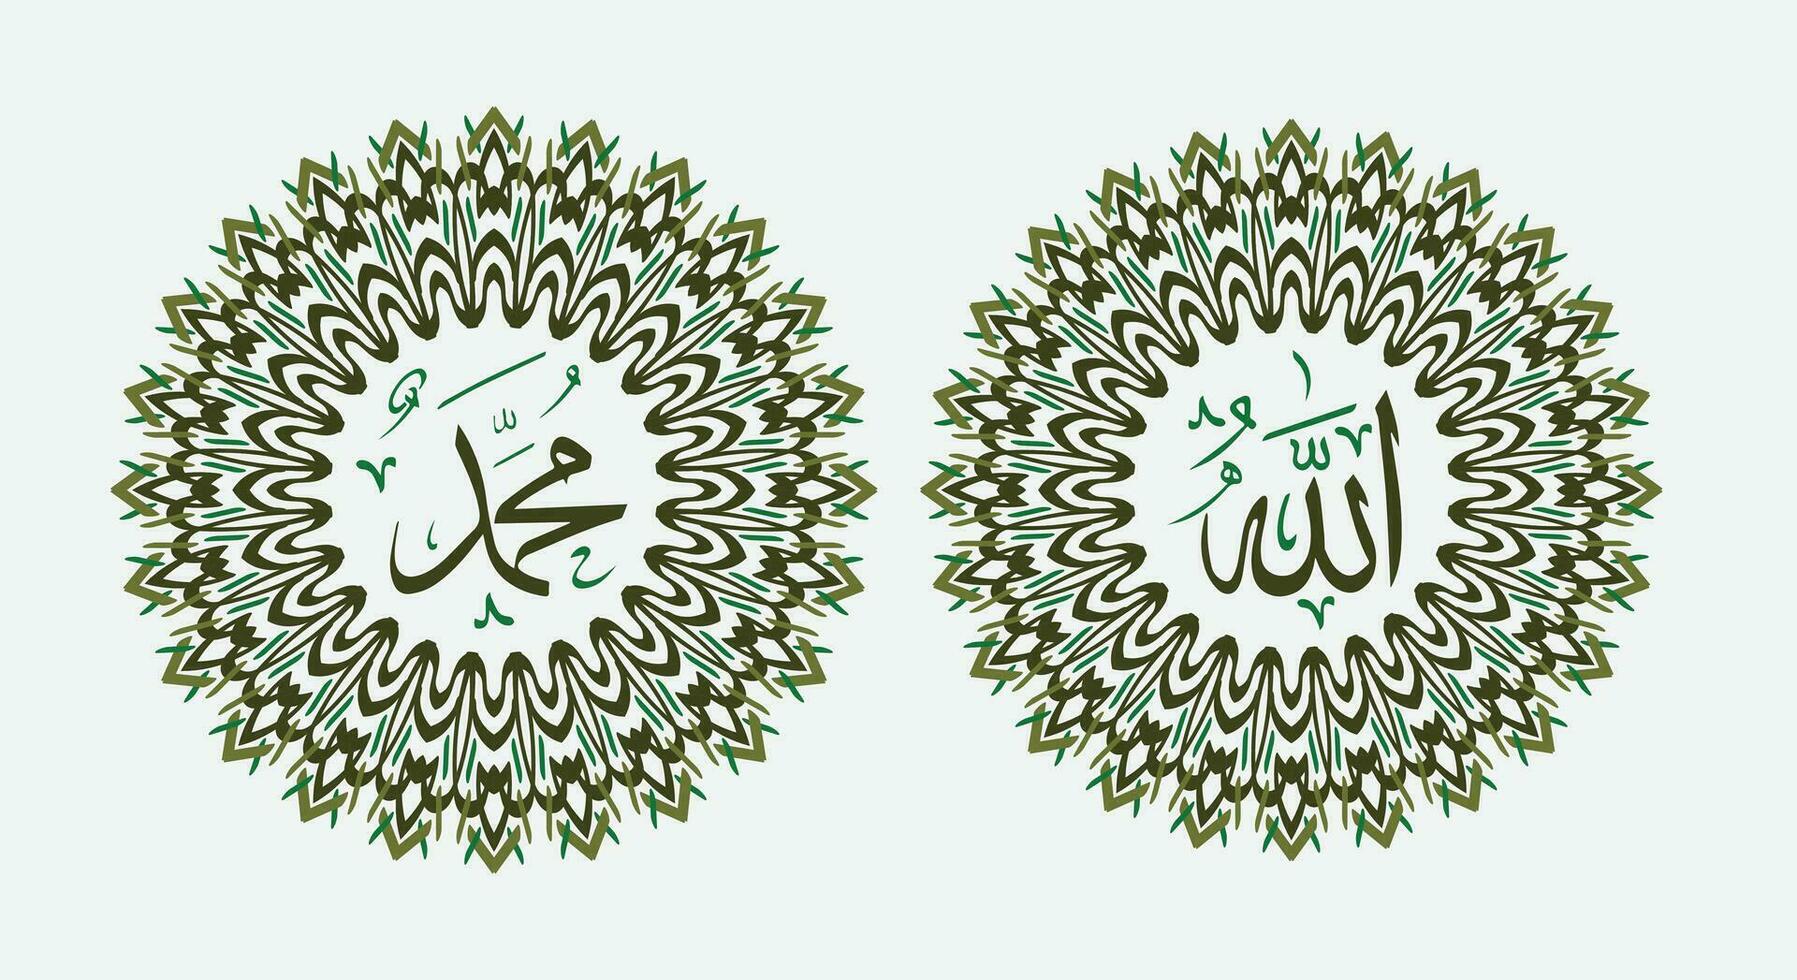 Alá Maomé nome do Alá Maomé, Alá Maomé árabe islâmico caligrafia arte, com tradicional quadro, Armação e verde cor vetor